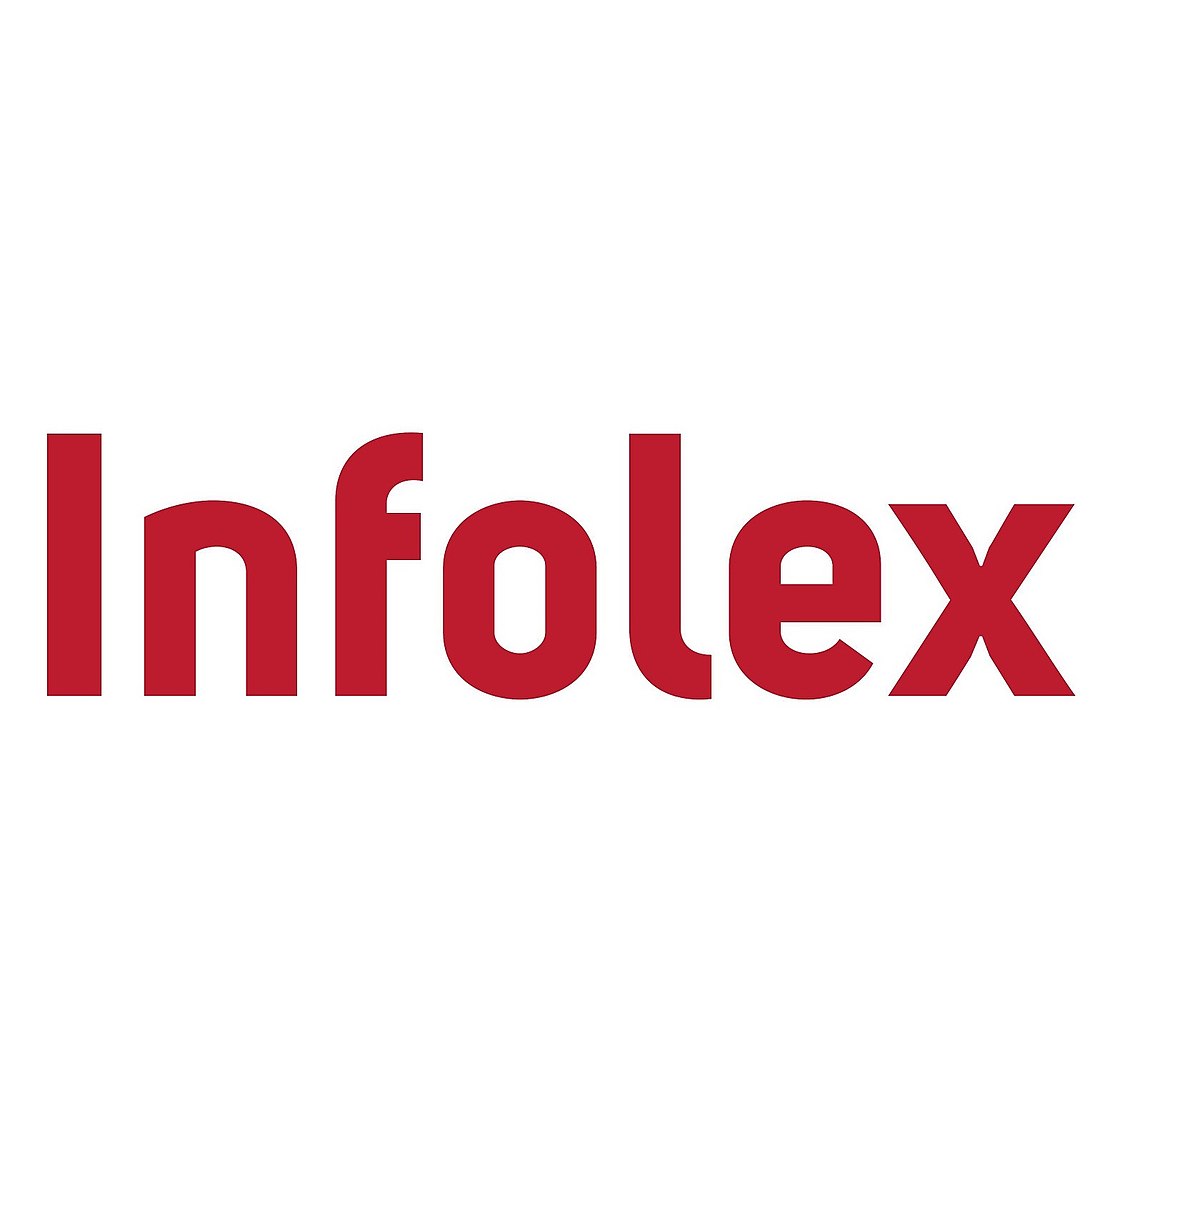 https://www.alytus.rvb.lt/wp-content/uploads/1200px-Infolex_logo.jpg